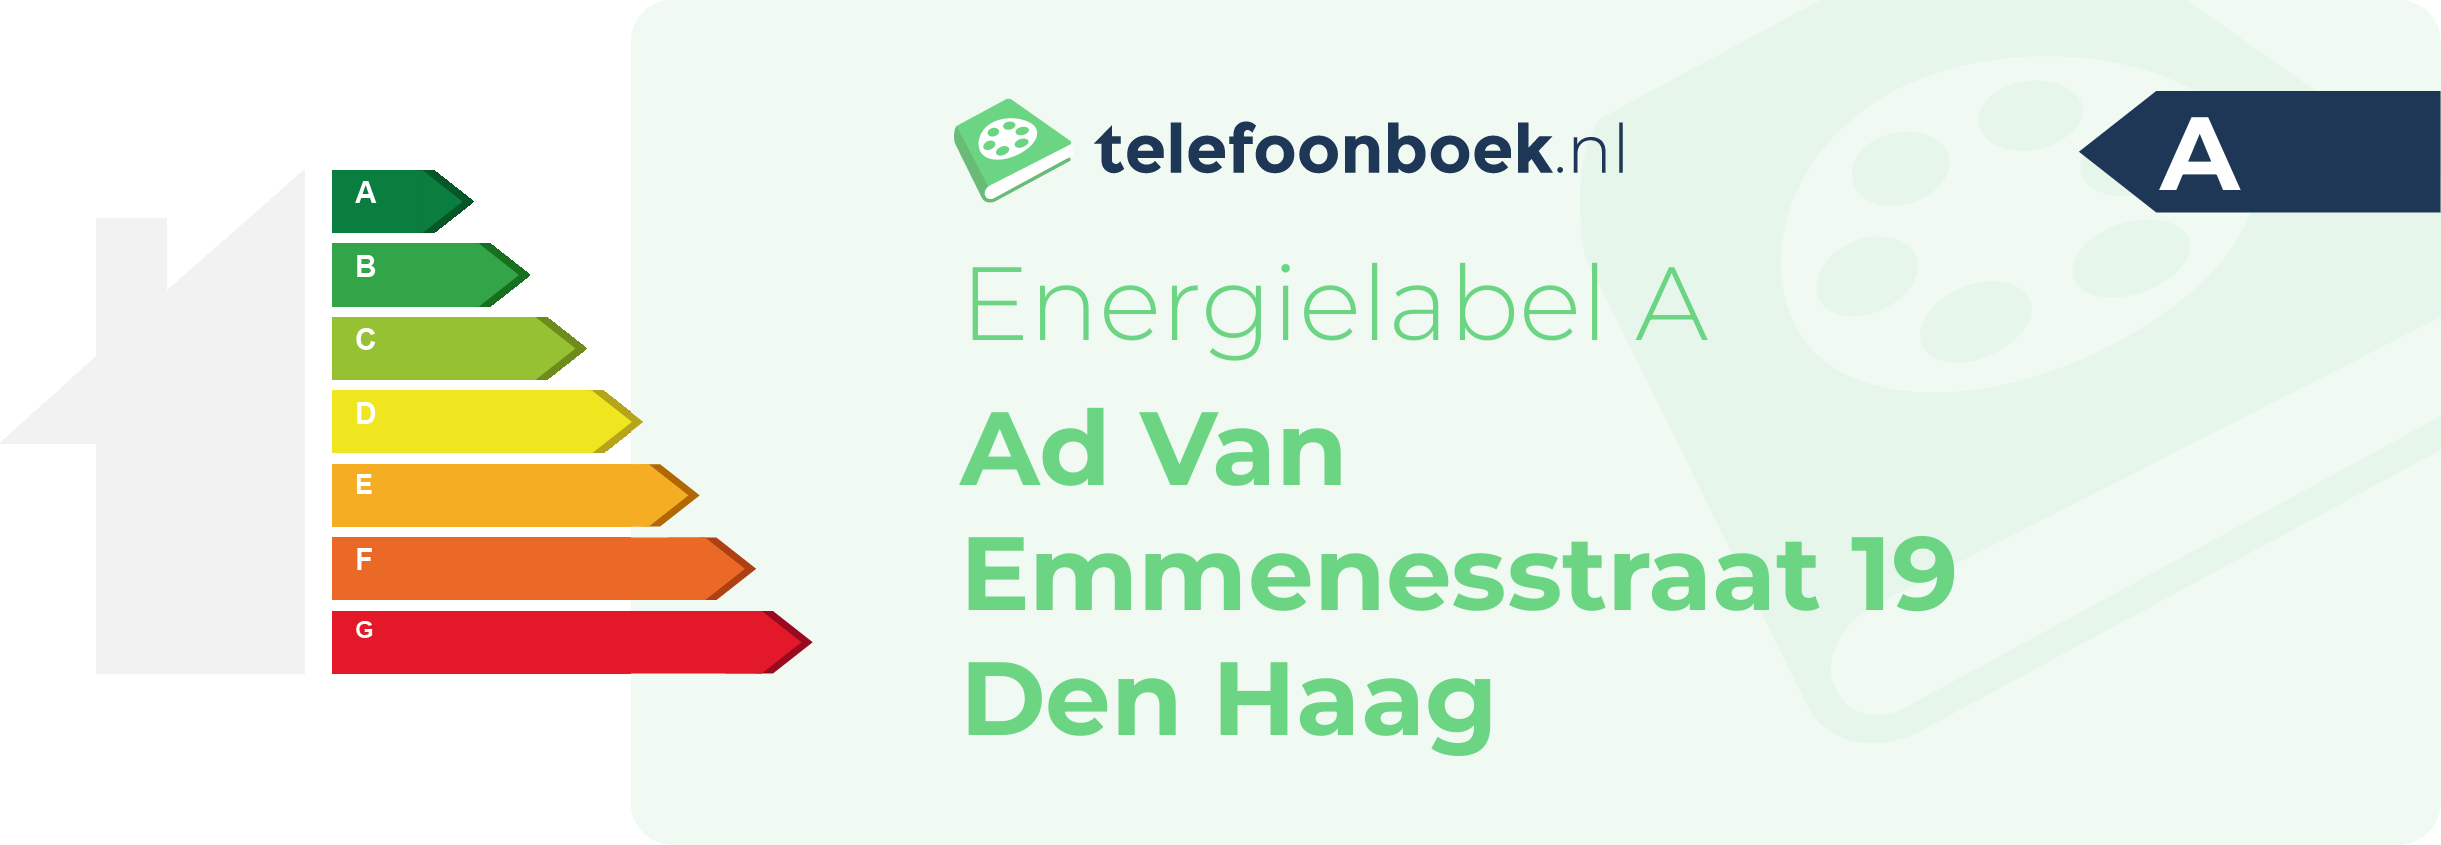 Energielabel Ad Van Emmenesstraat 19 Den Haag